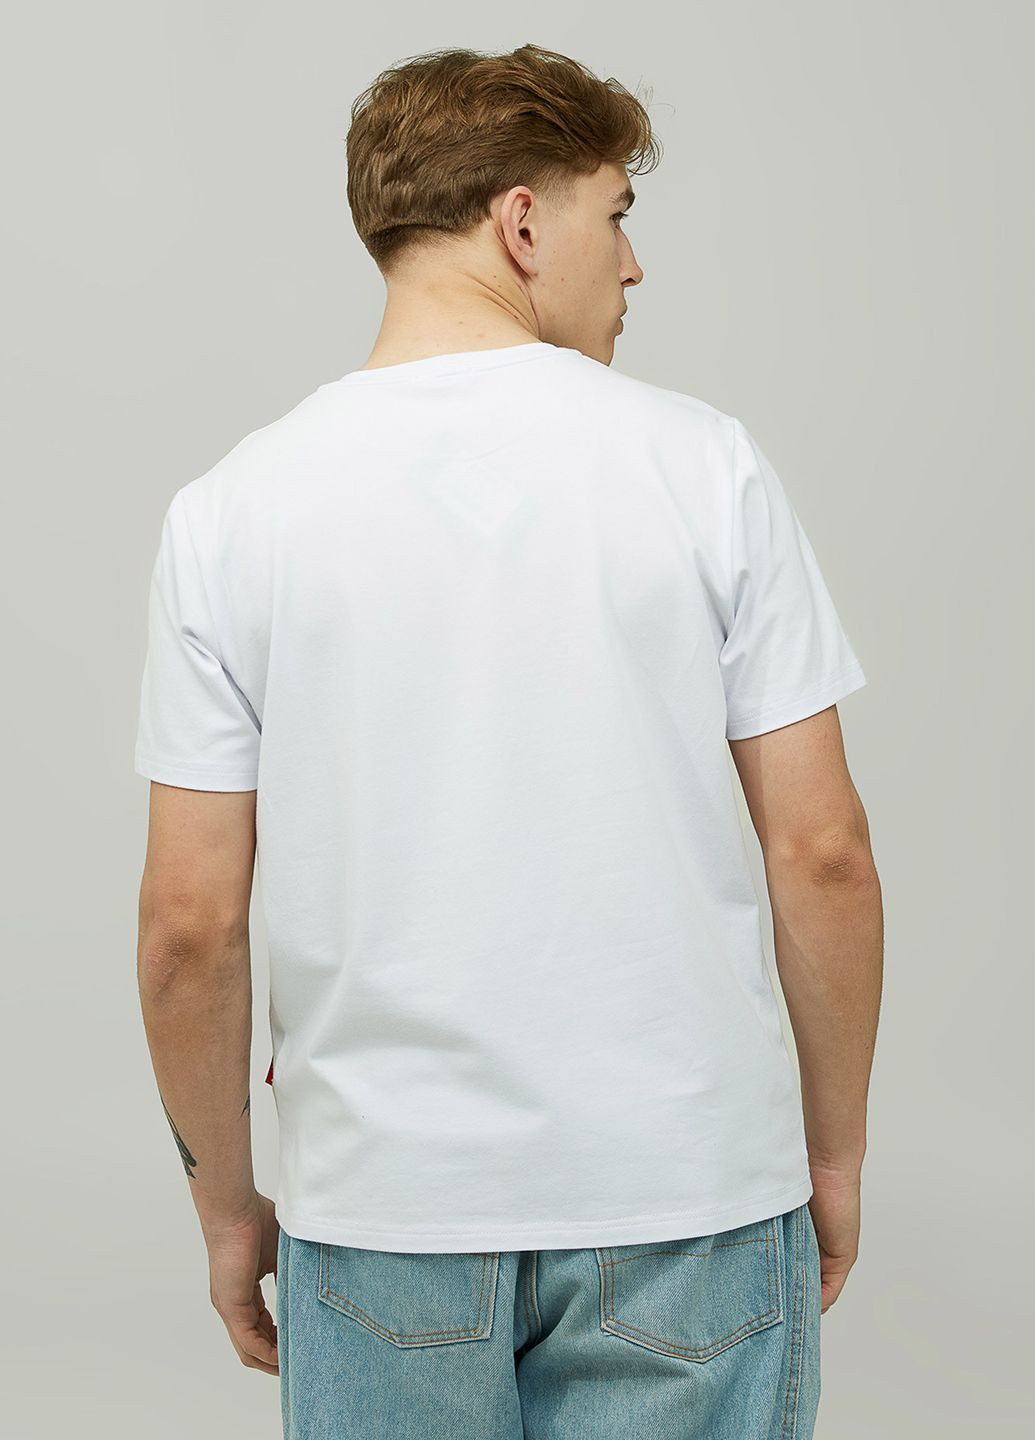 Біла футболка ukrainian з коротким рукавом Gen